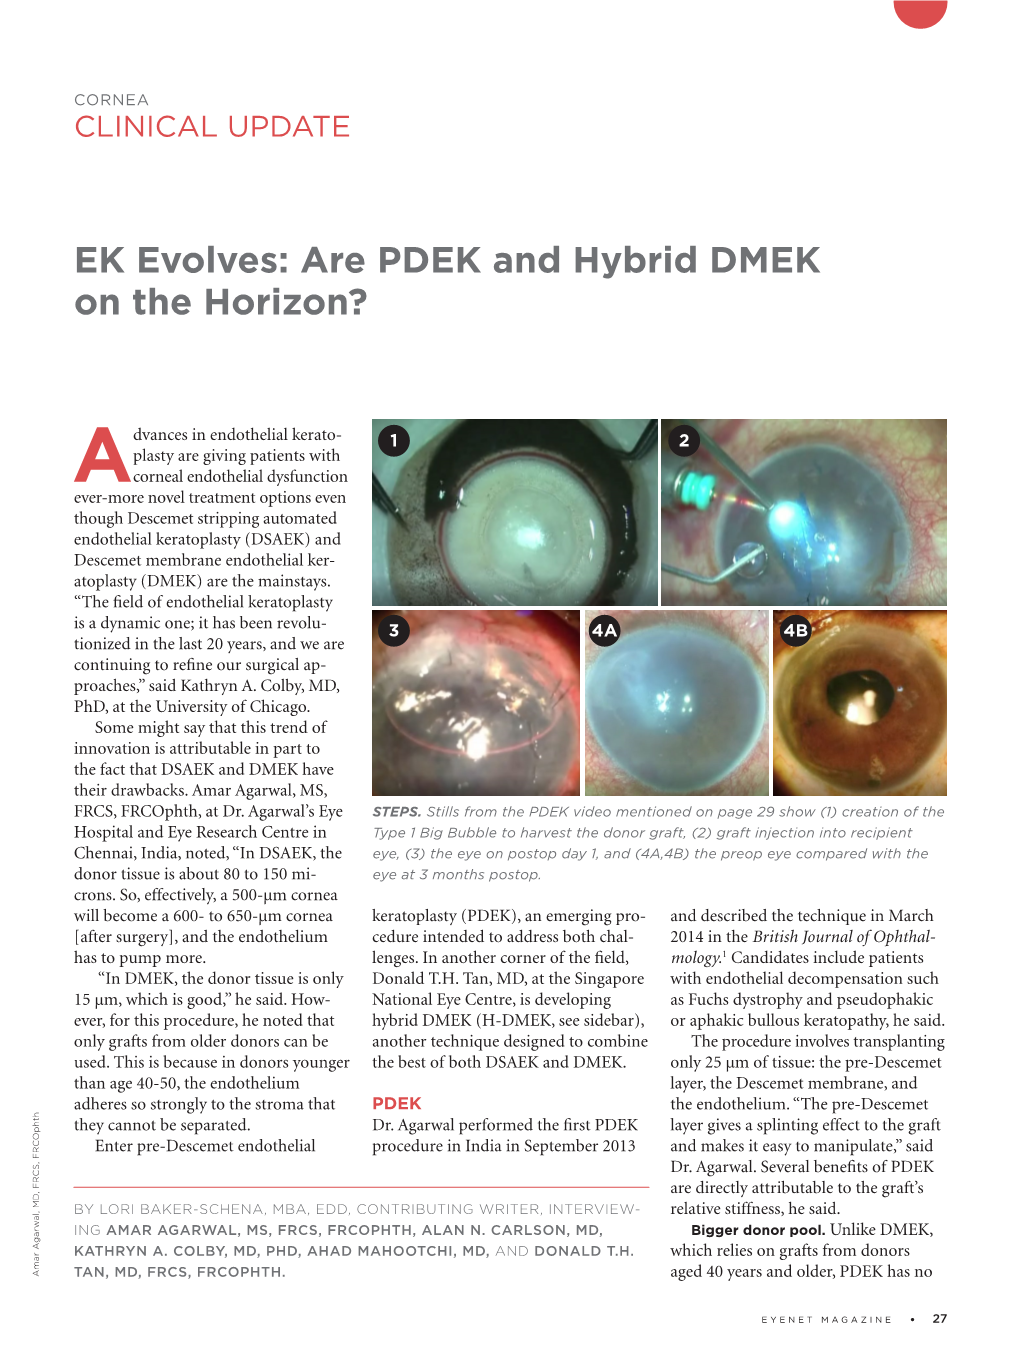 EK Evolves: Are PDEK and Hybrid DMEK on the Horizon?